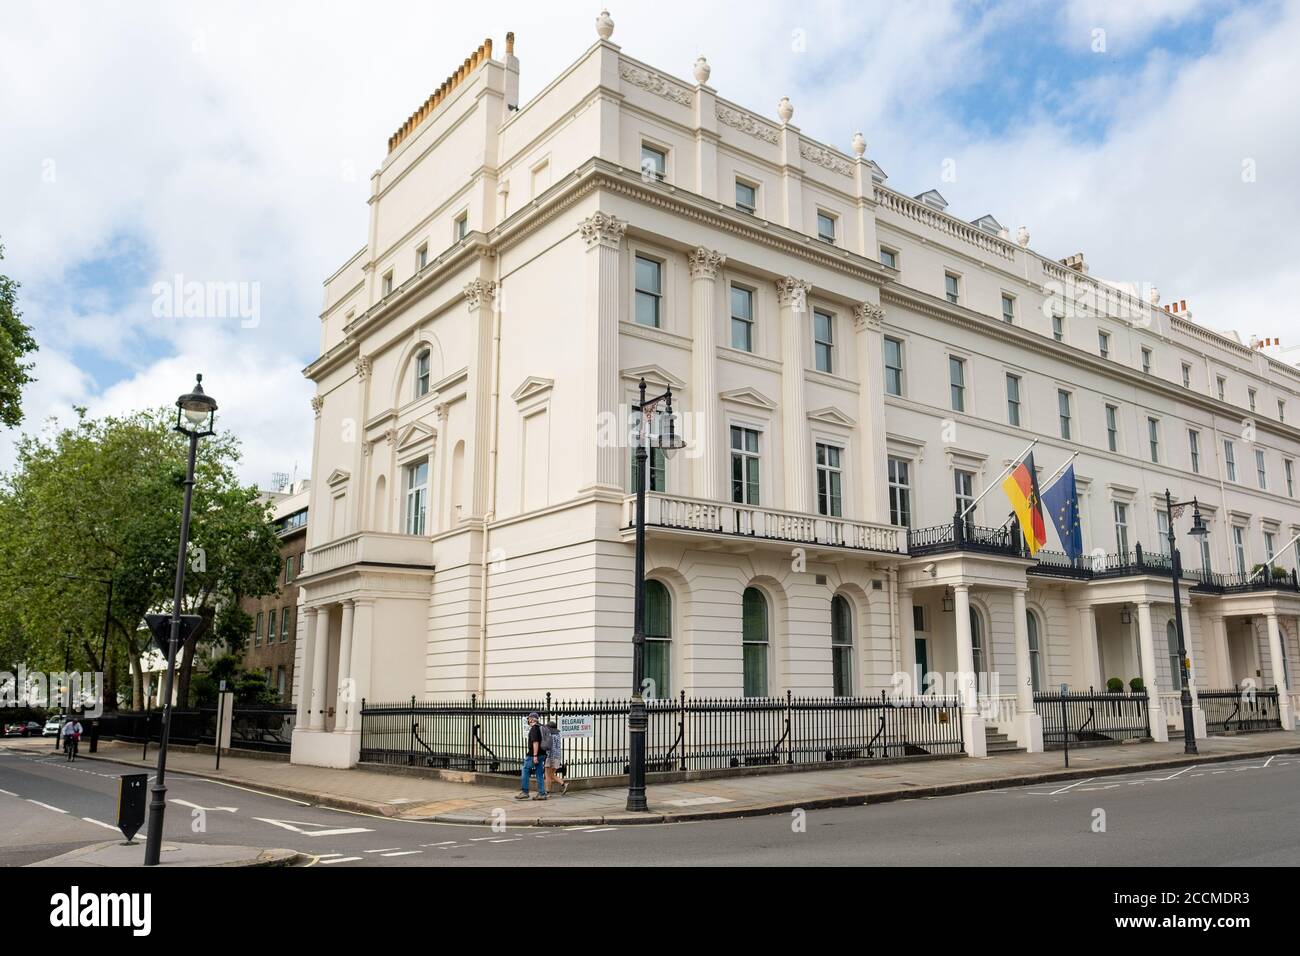 Londres- le bâtiment de l'ambassade allemande sur la place Belgrave à Belgravia Banque D'Images